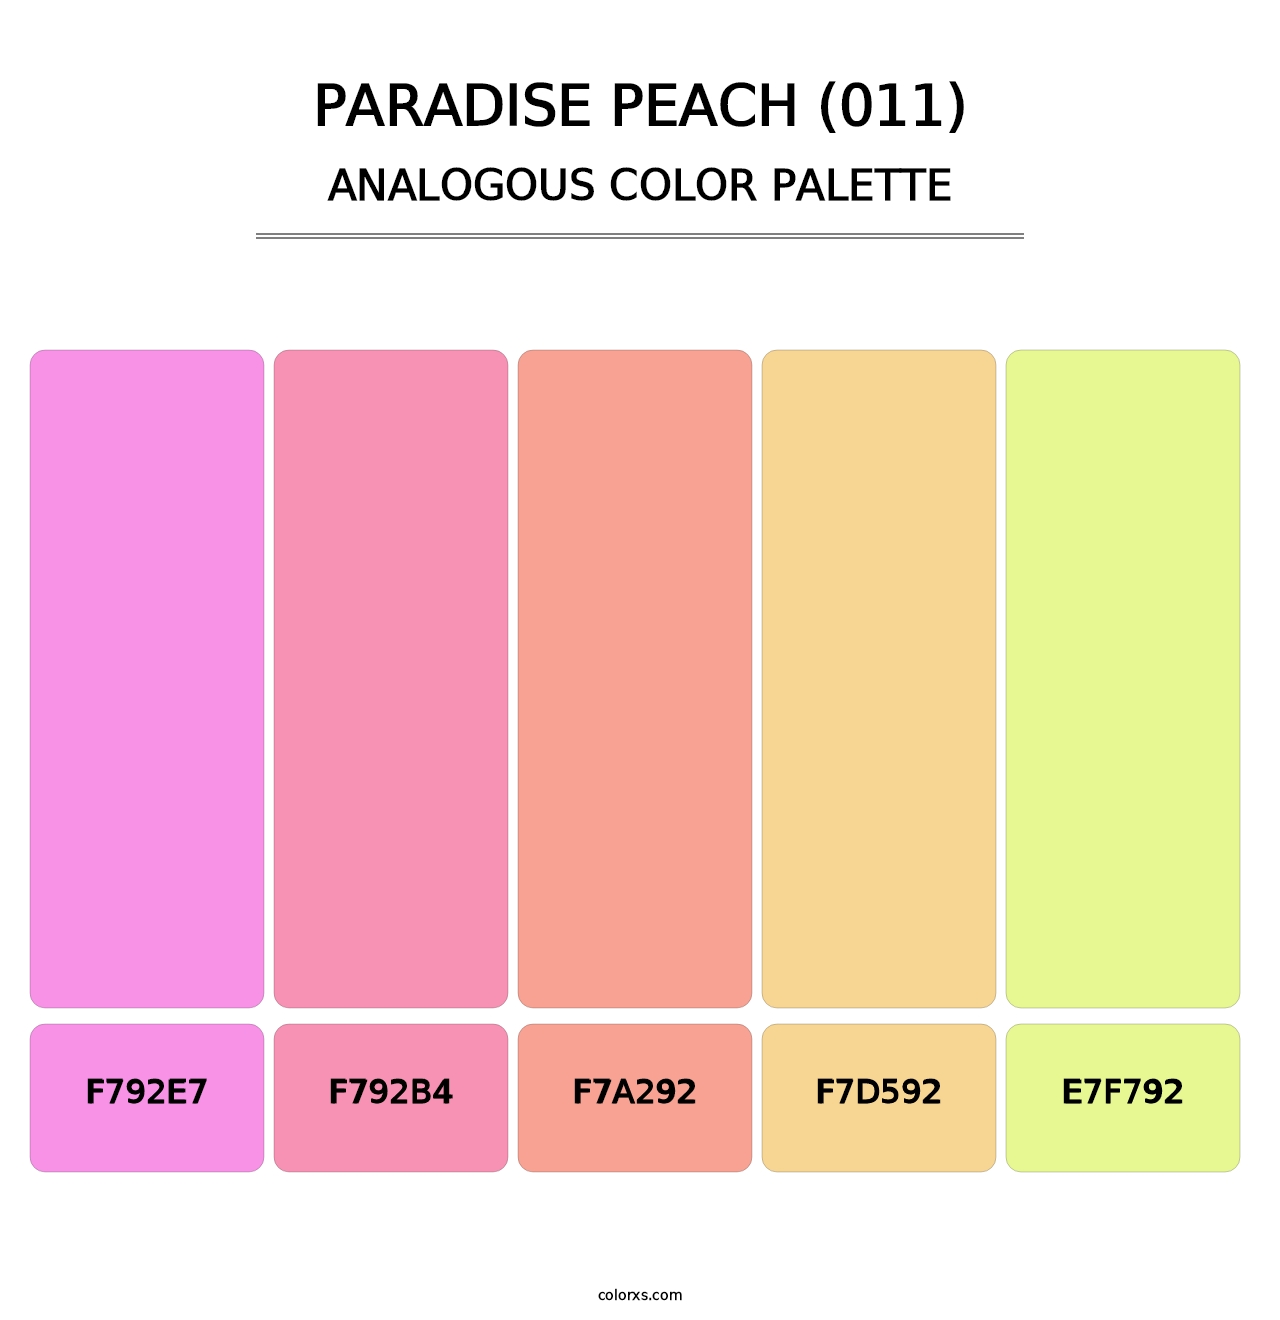 Paradise Peach (011) - Analogous Color Palette